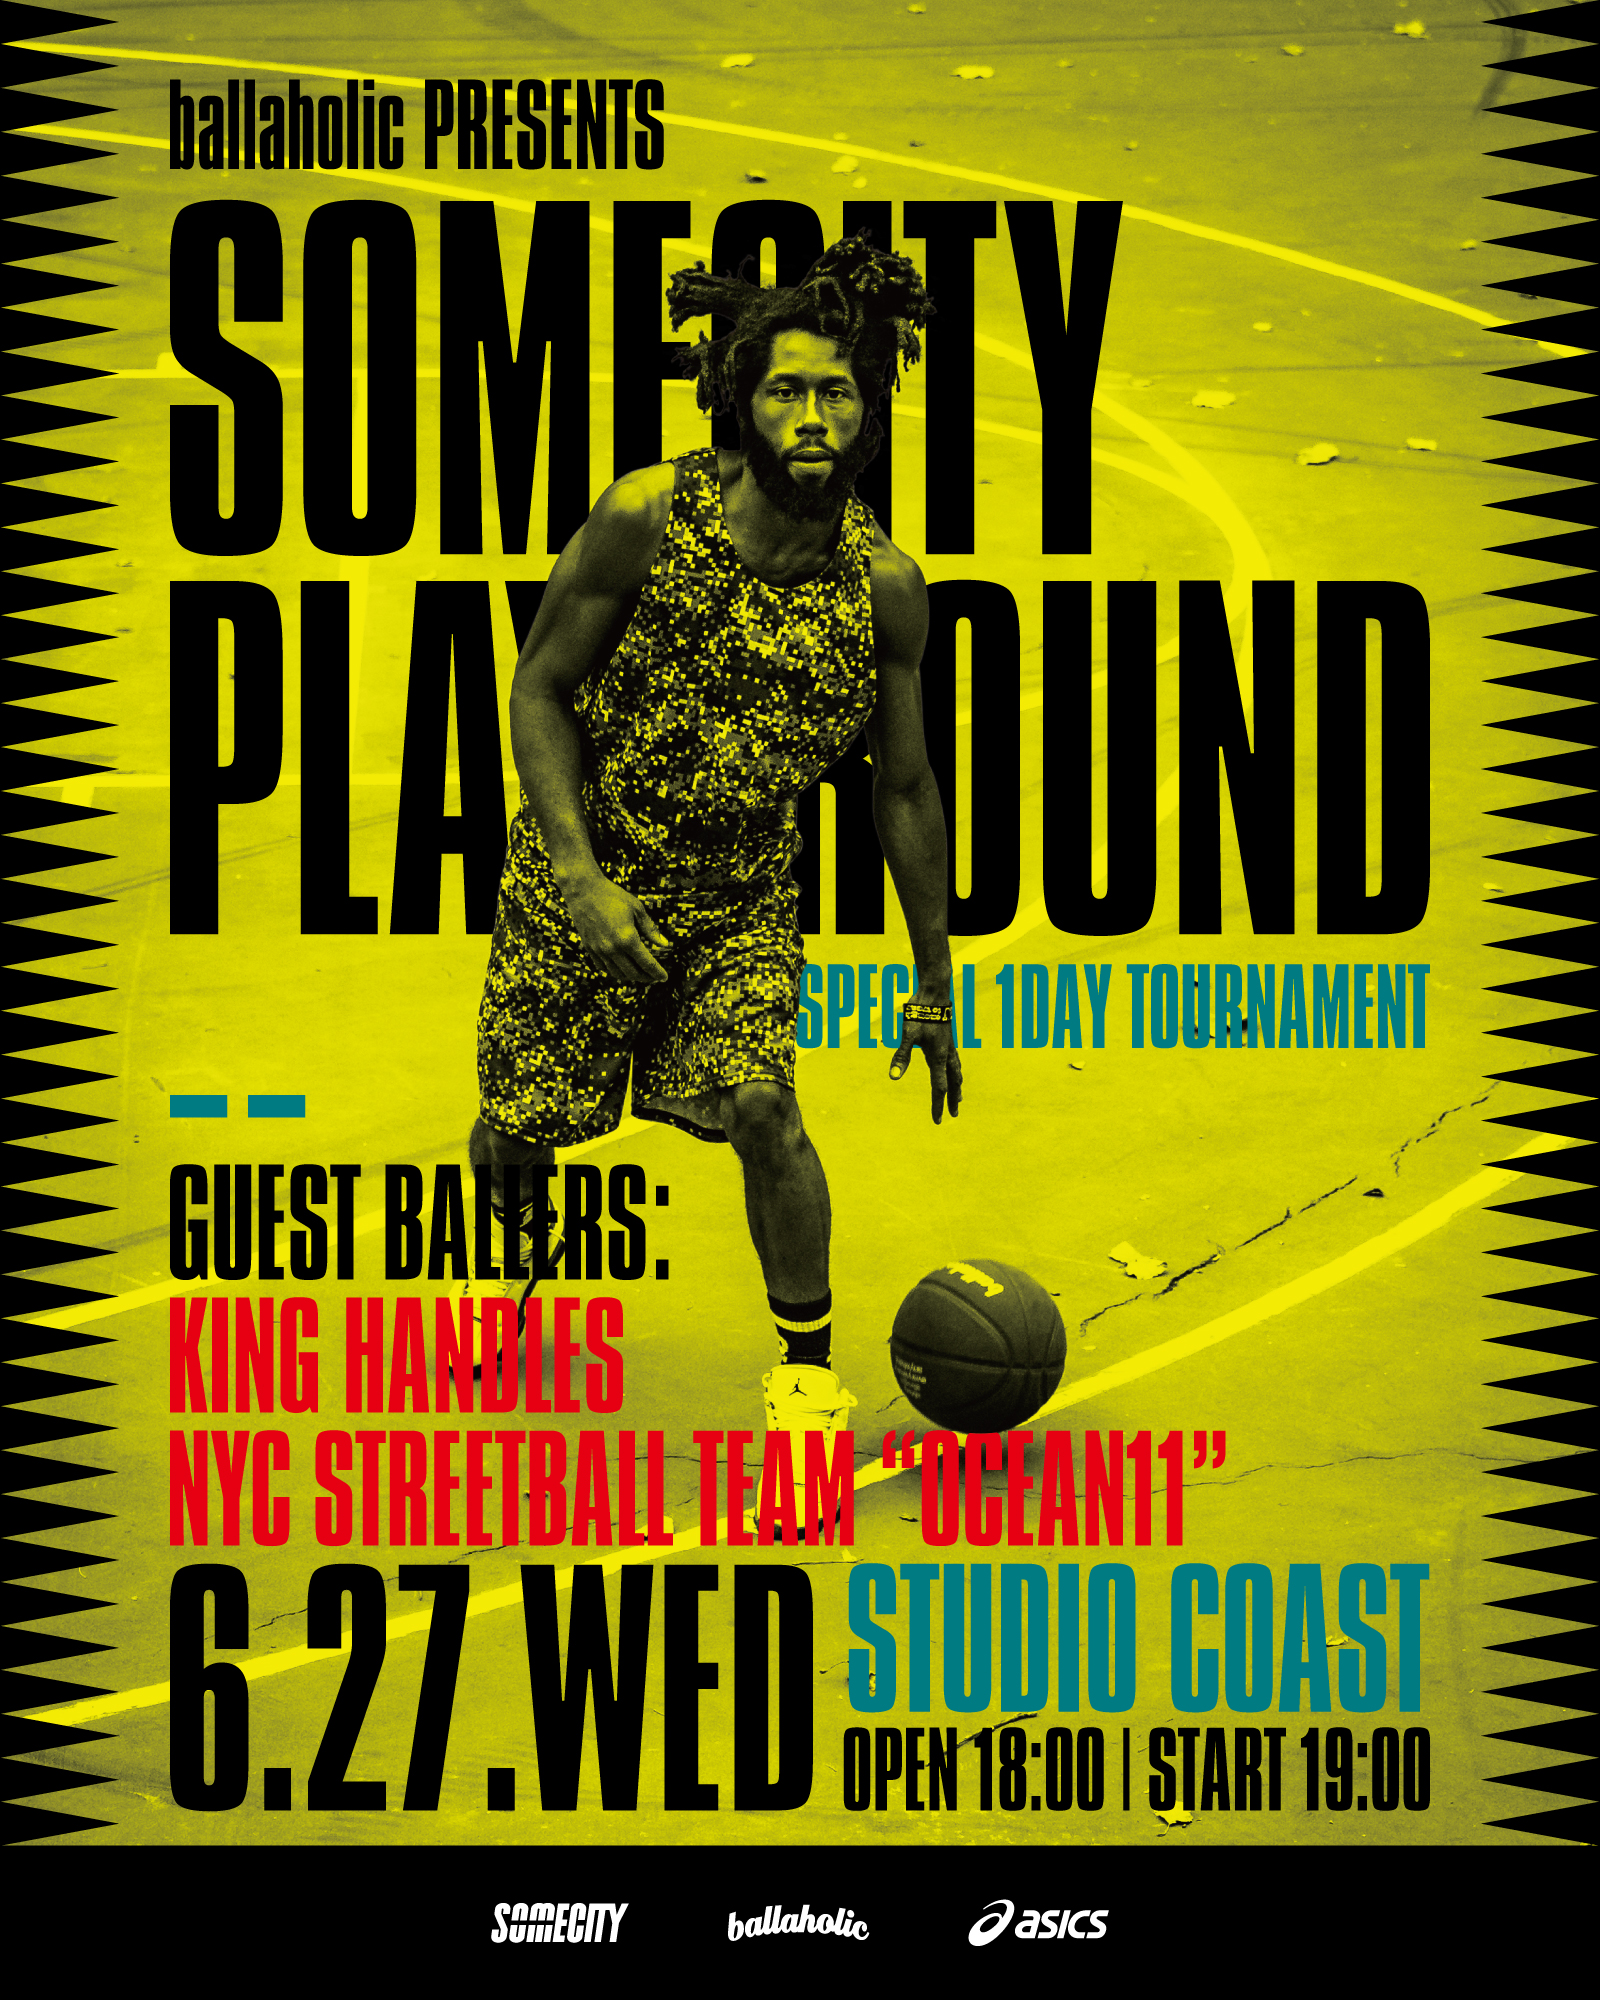 ballaholic presents SOMECITY PLAYGROUND | ストリートボールリーグ 「SOMECITY」｜ 3on3形式のストリートバスケリーグ